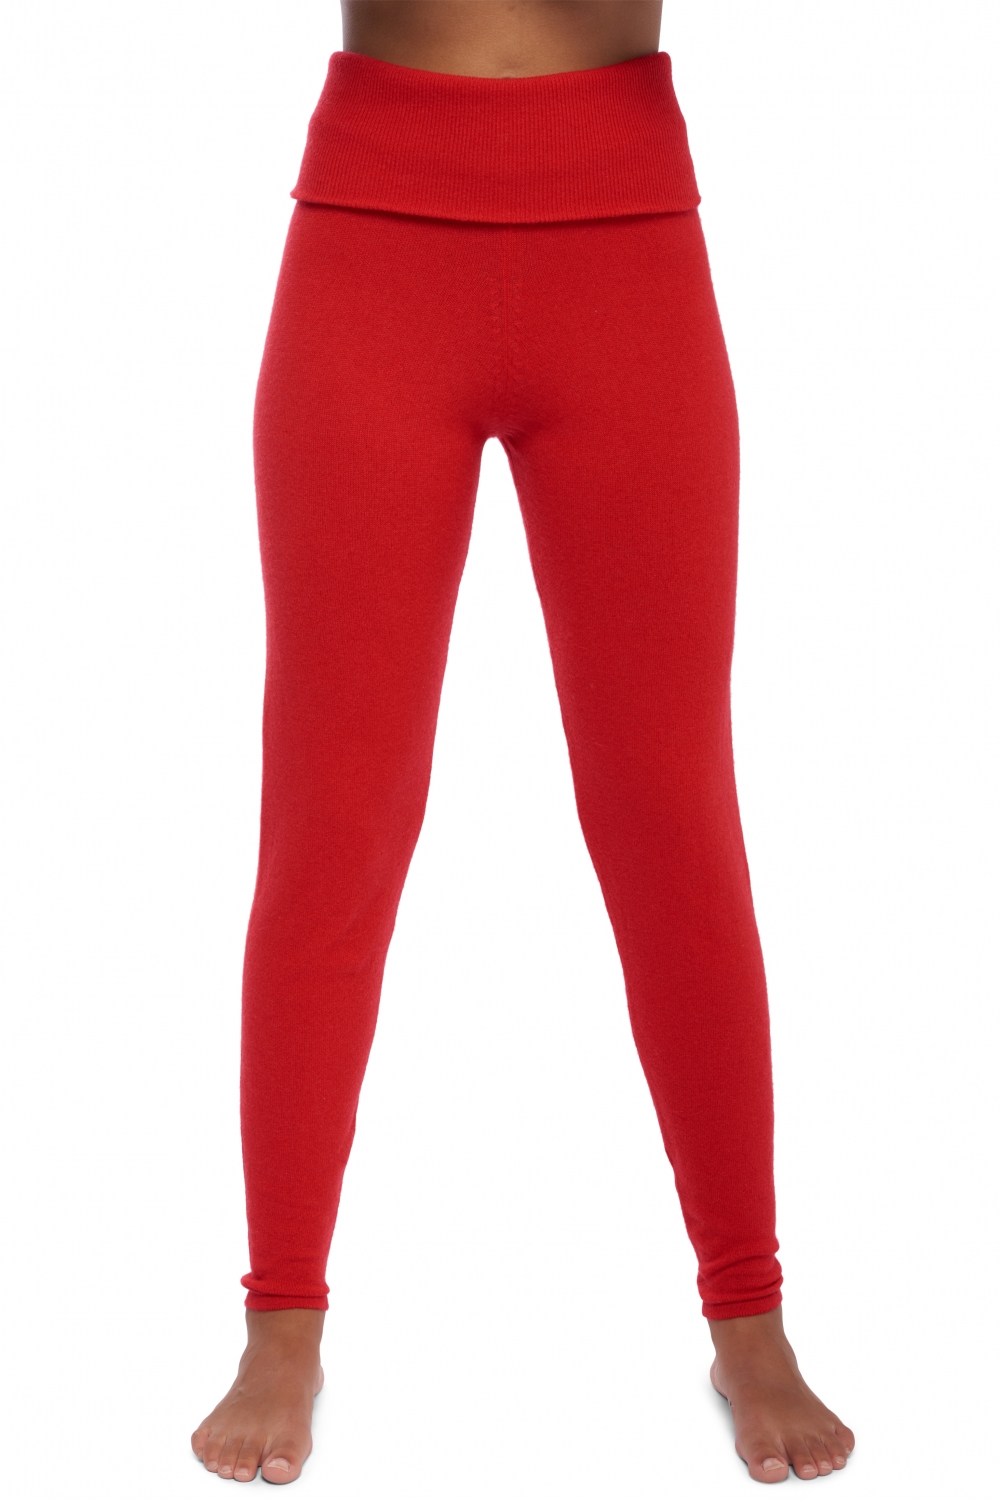 Kasjmier dames kasjmier broeken leggings shirley rouge xl